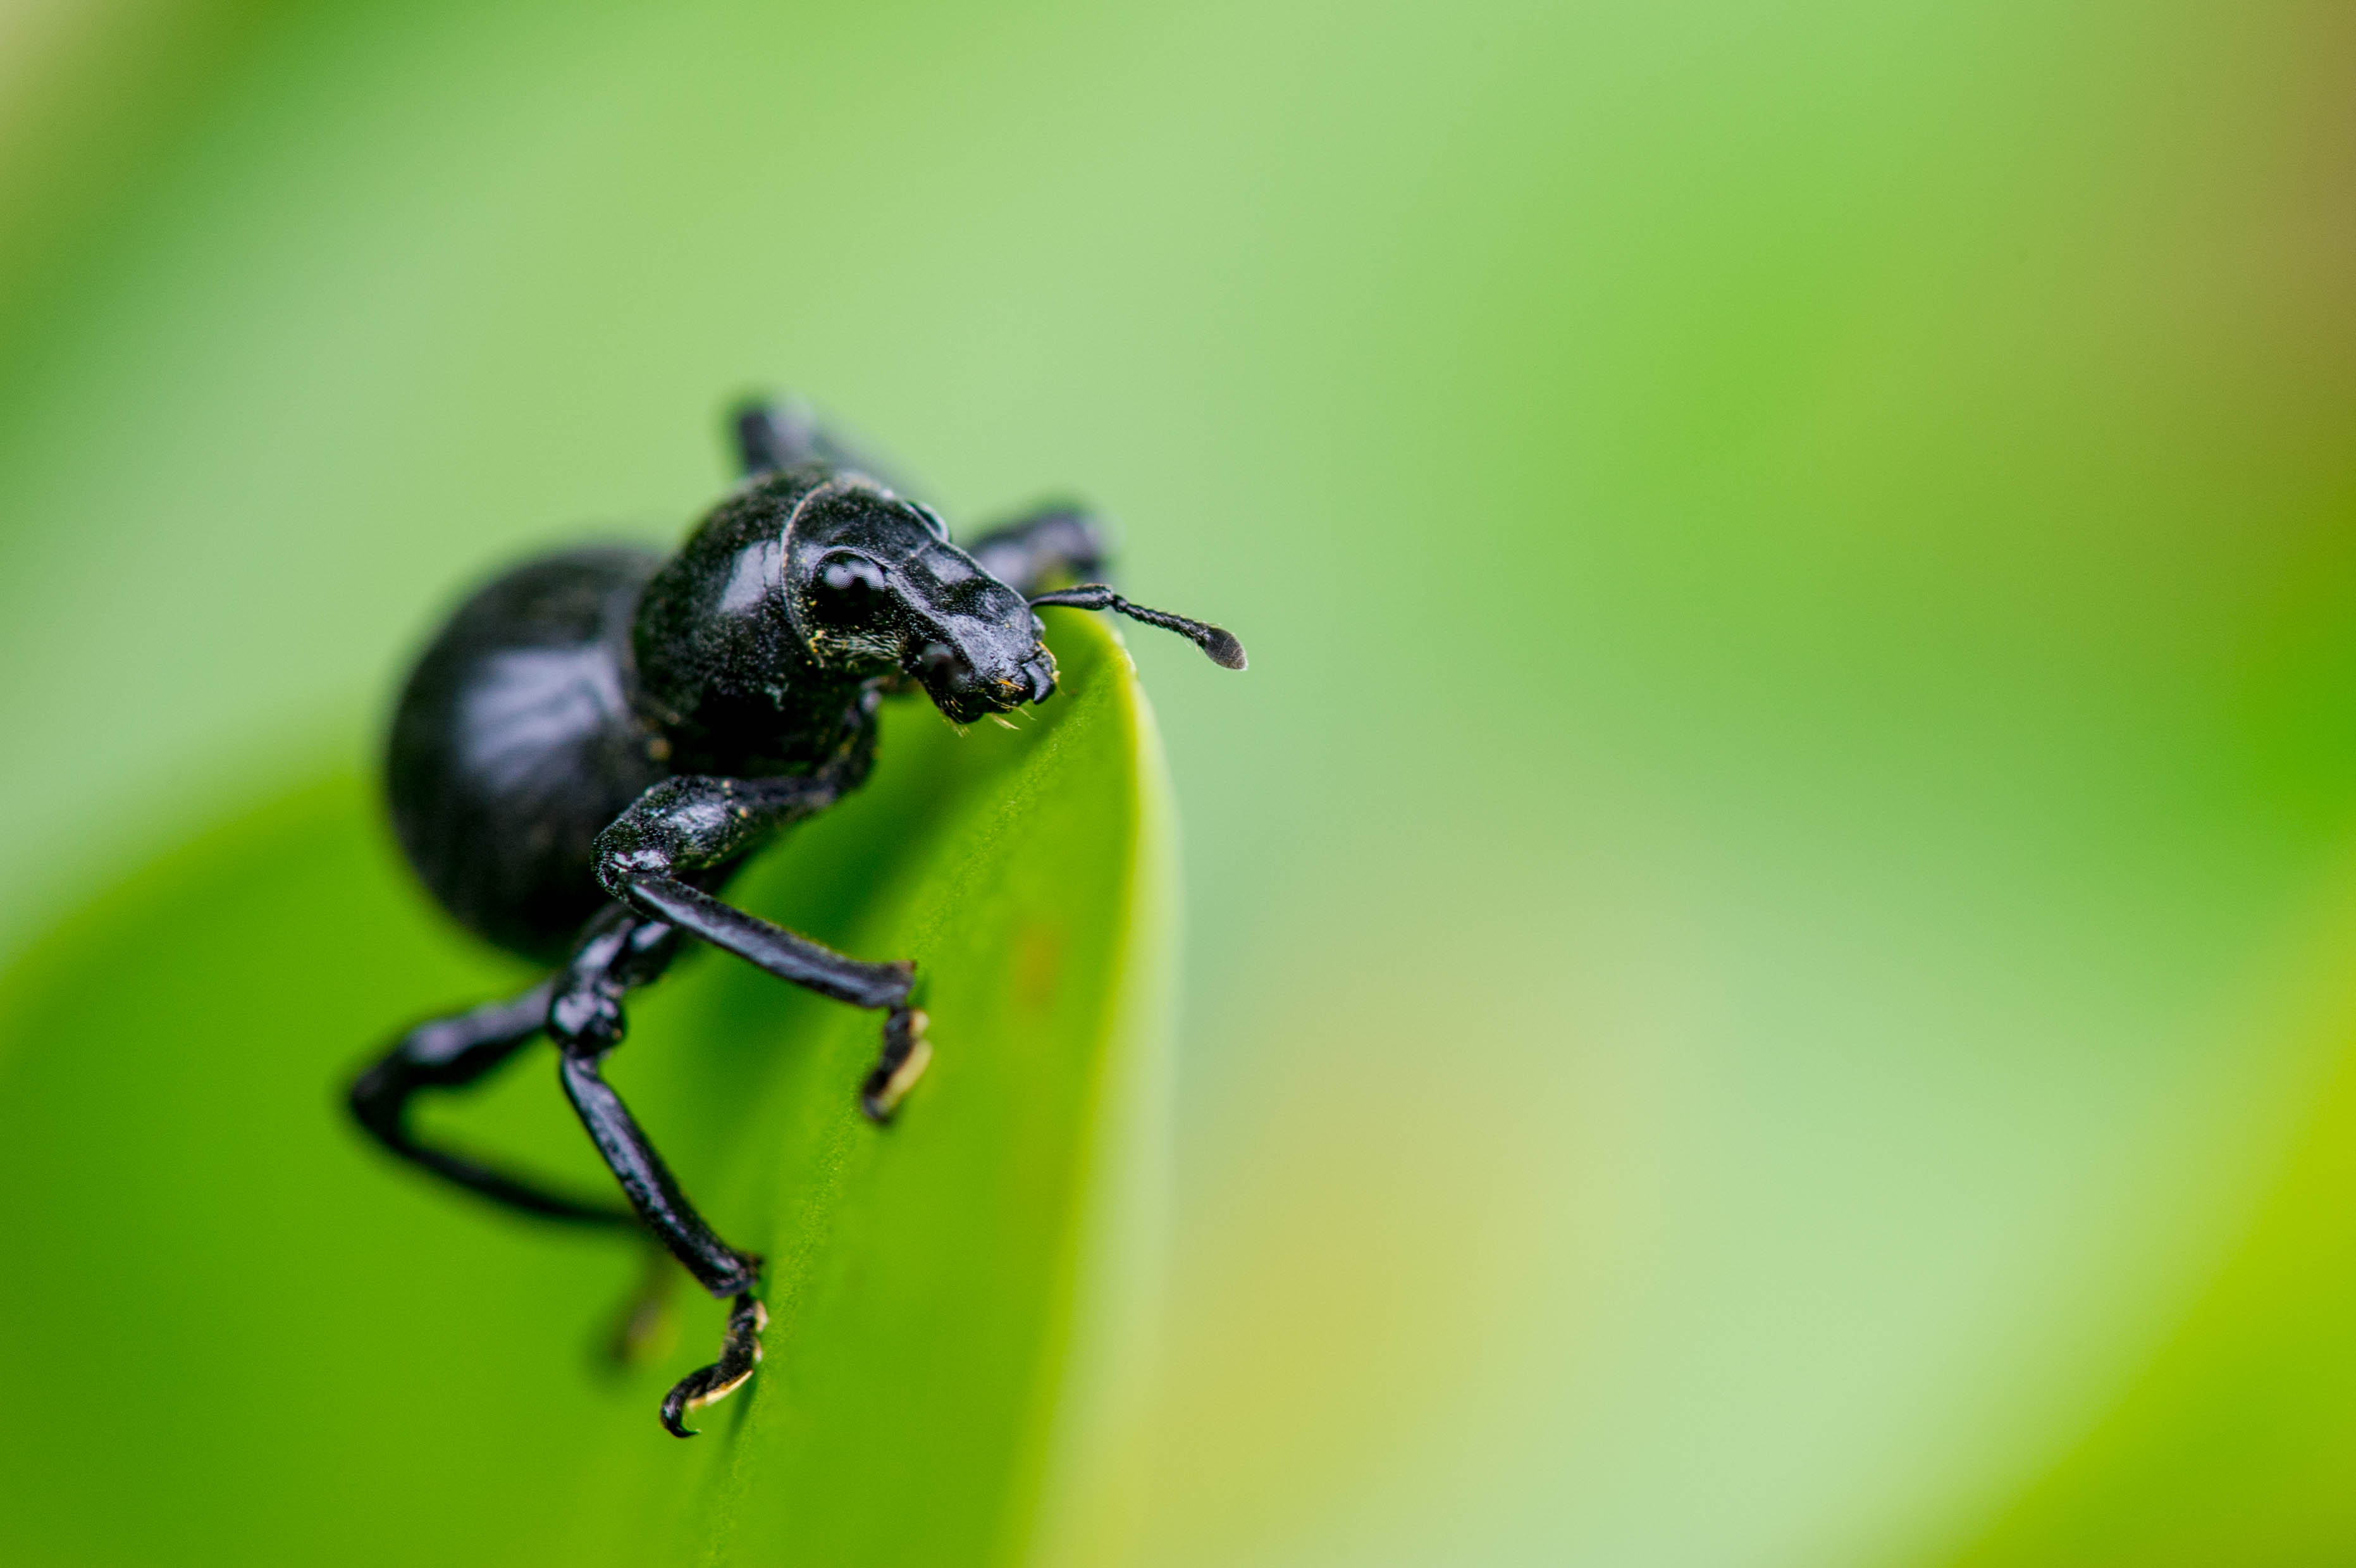 クロカタゾウムシ 世界で一番硬い虫 虫の写真と生態なら昆虫写真図鑑 ムシミル